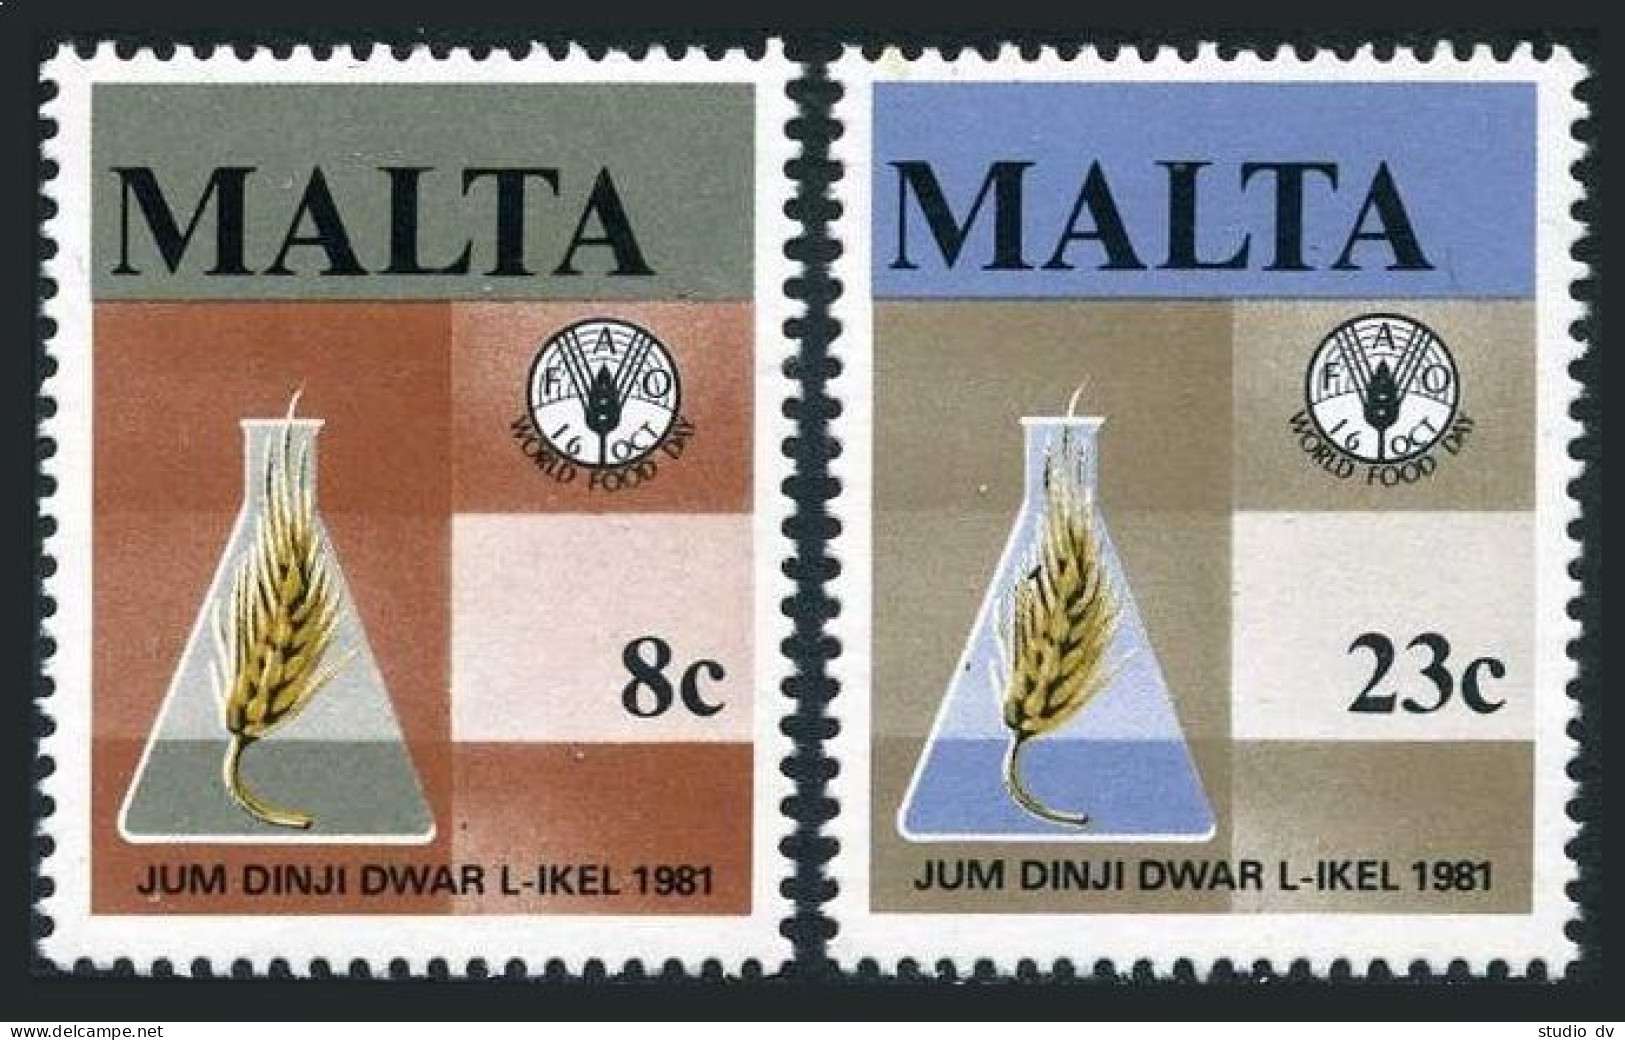 Malta 590-591,MNH.Michel 634-635. FAO 1981.Food Day. - Malte